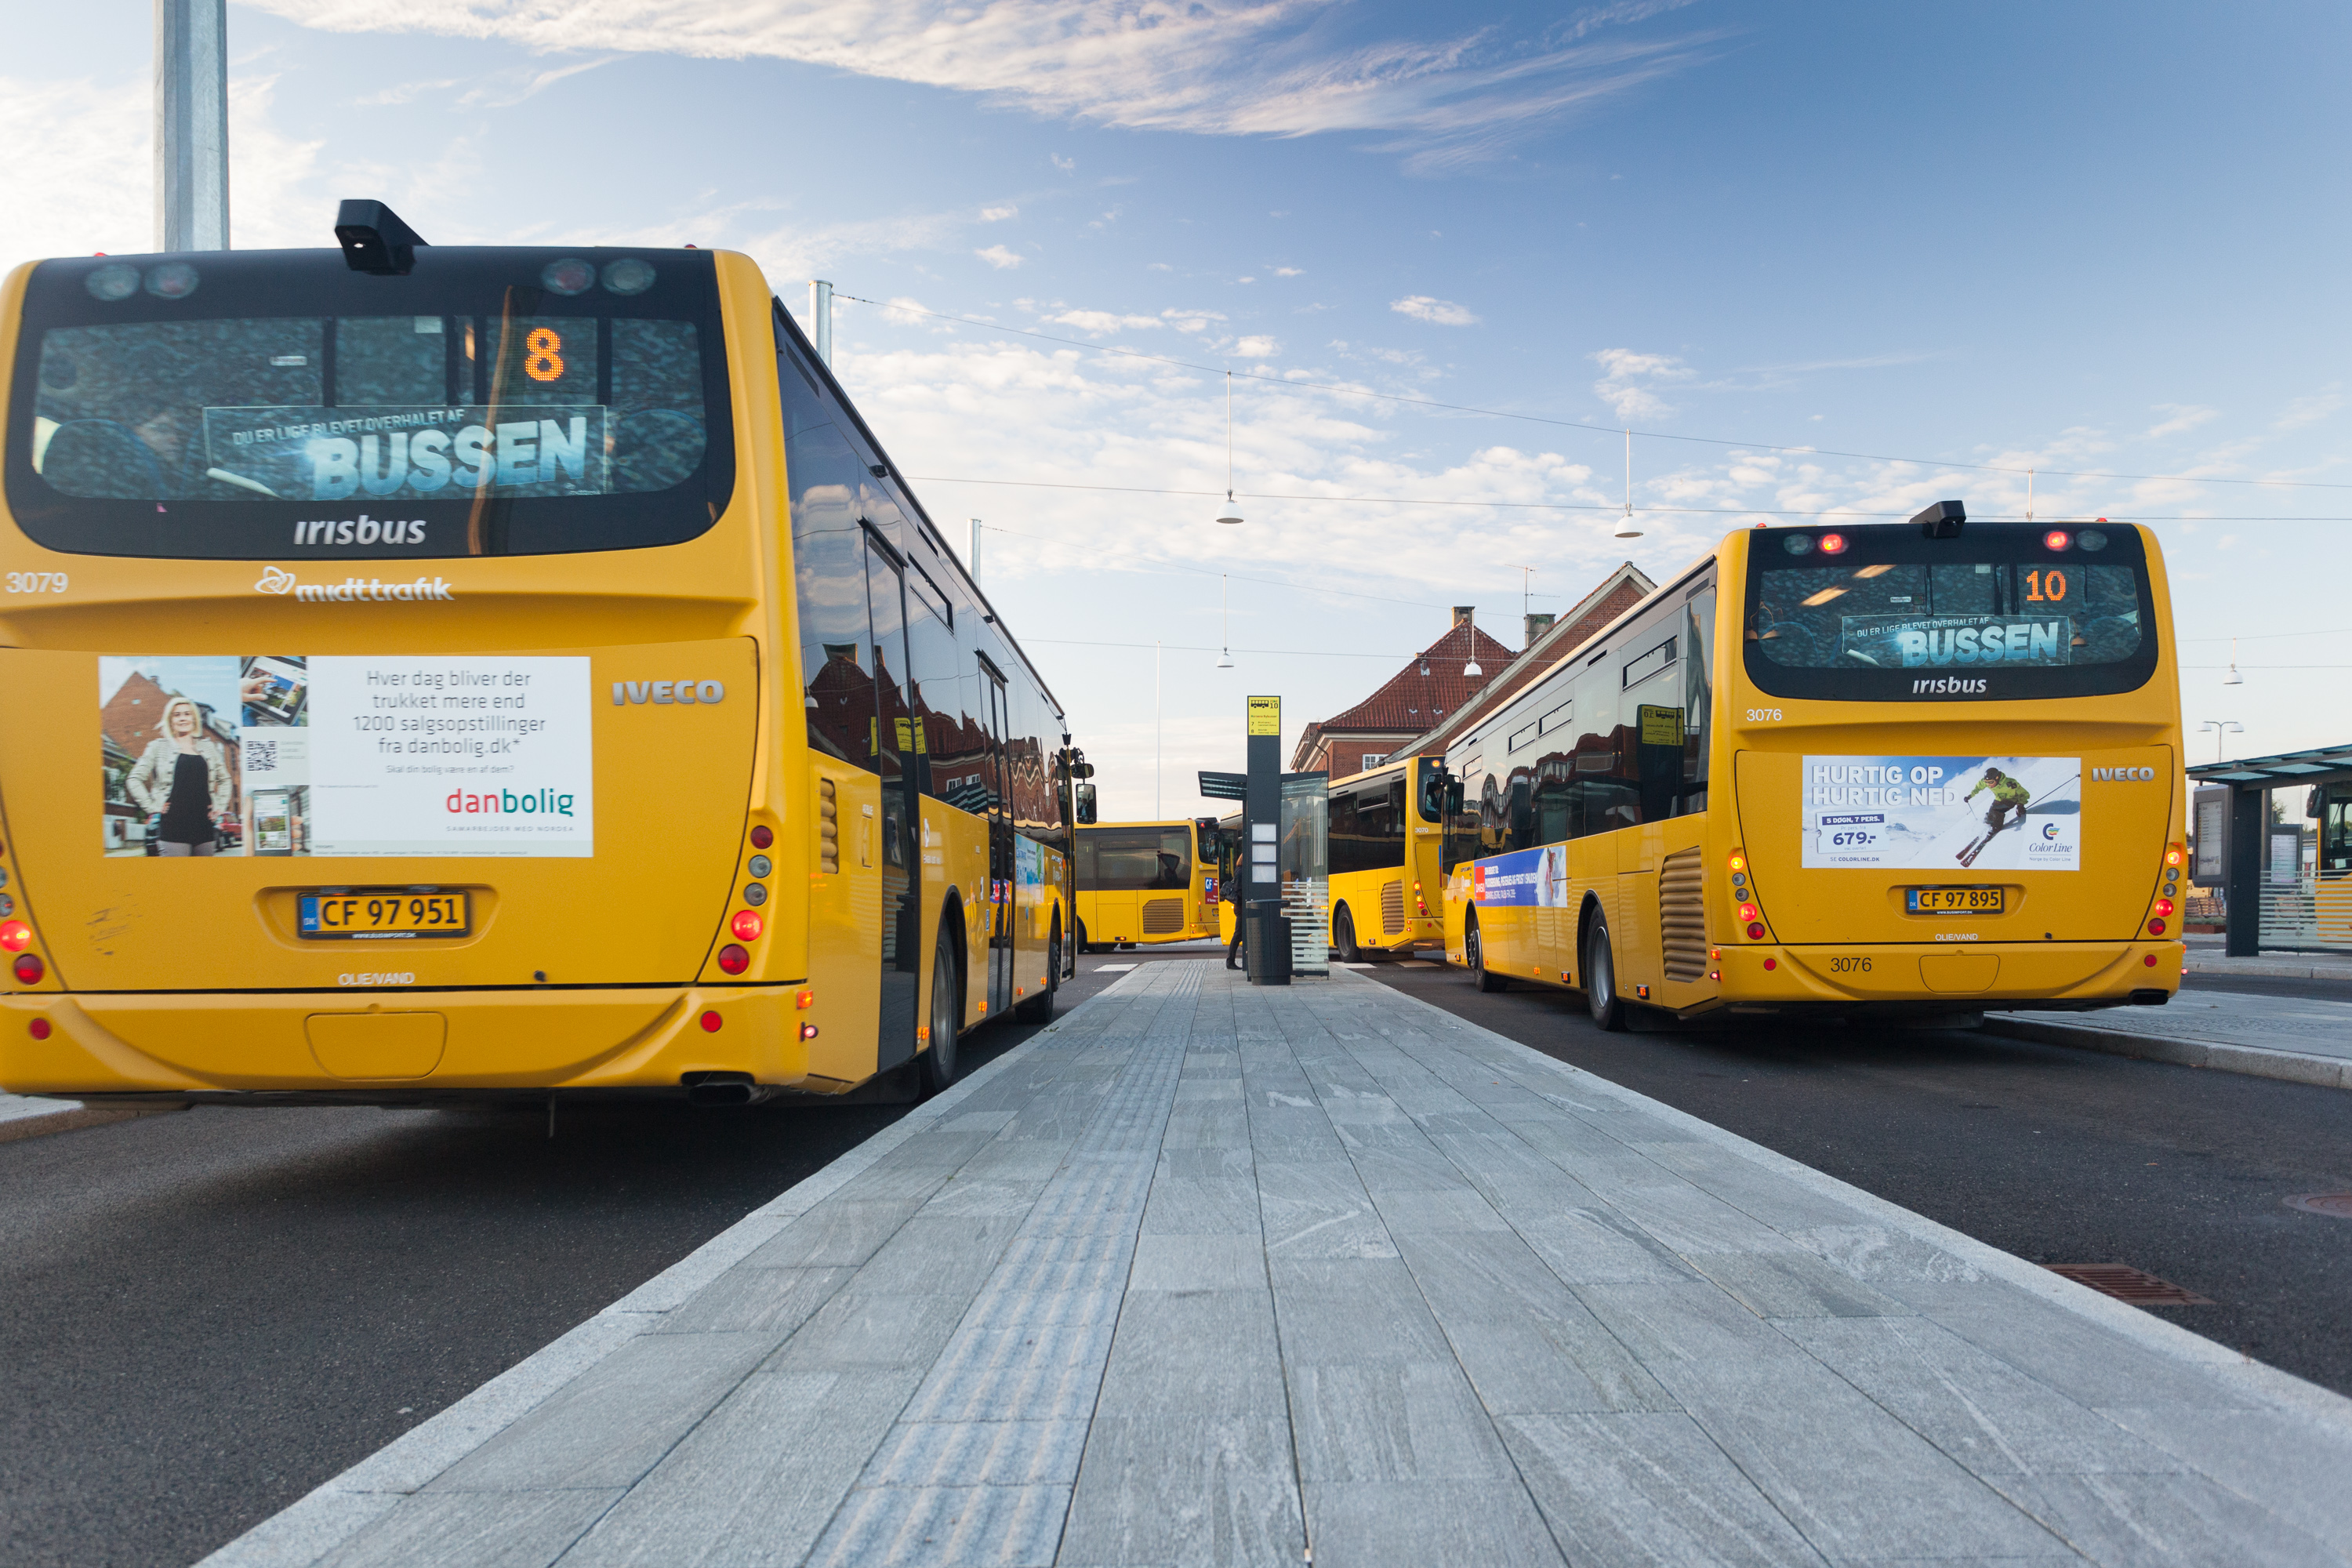 Линия общественного транспорта. Yellow line автобусы. Хорсенс машина. Midttrafik - "the Bus".